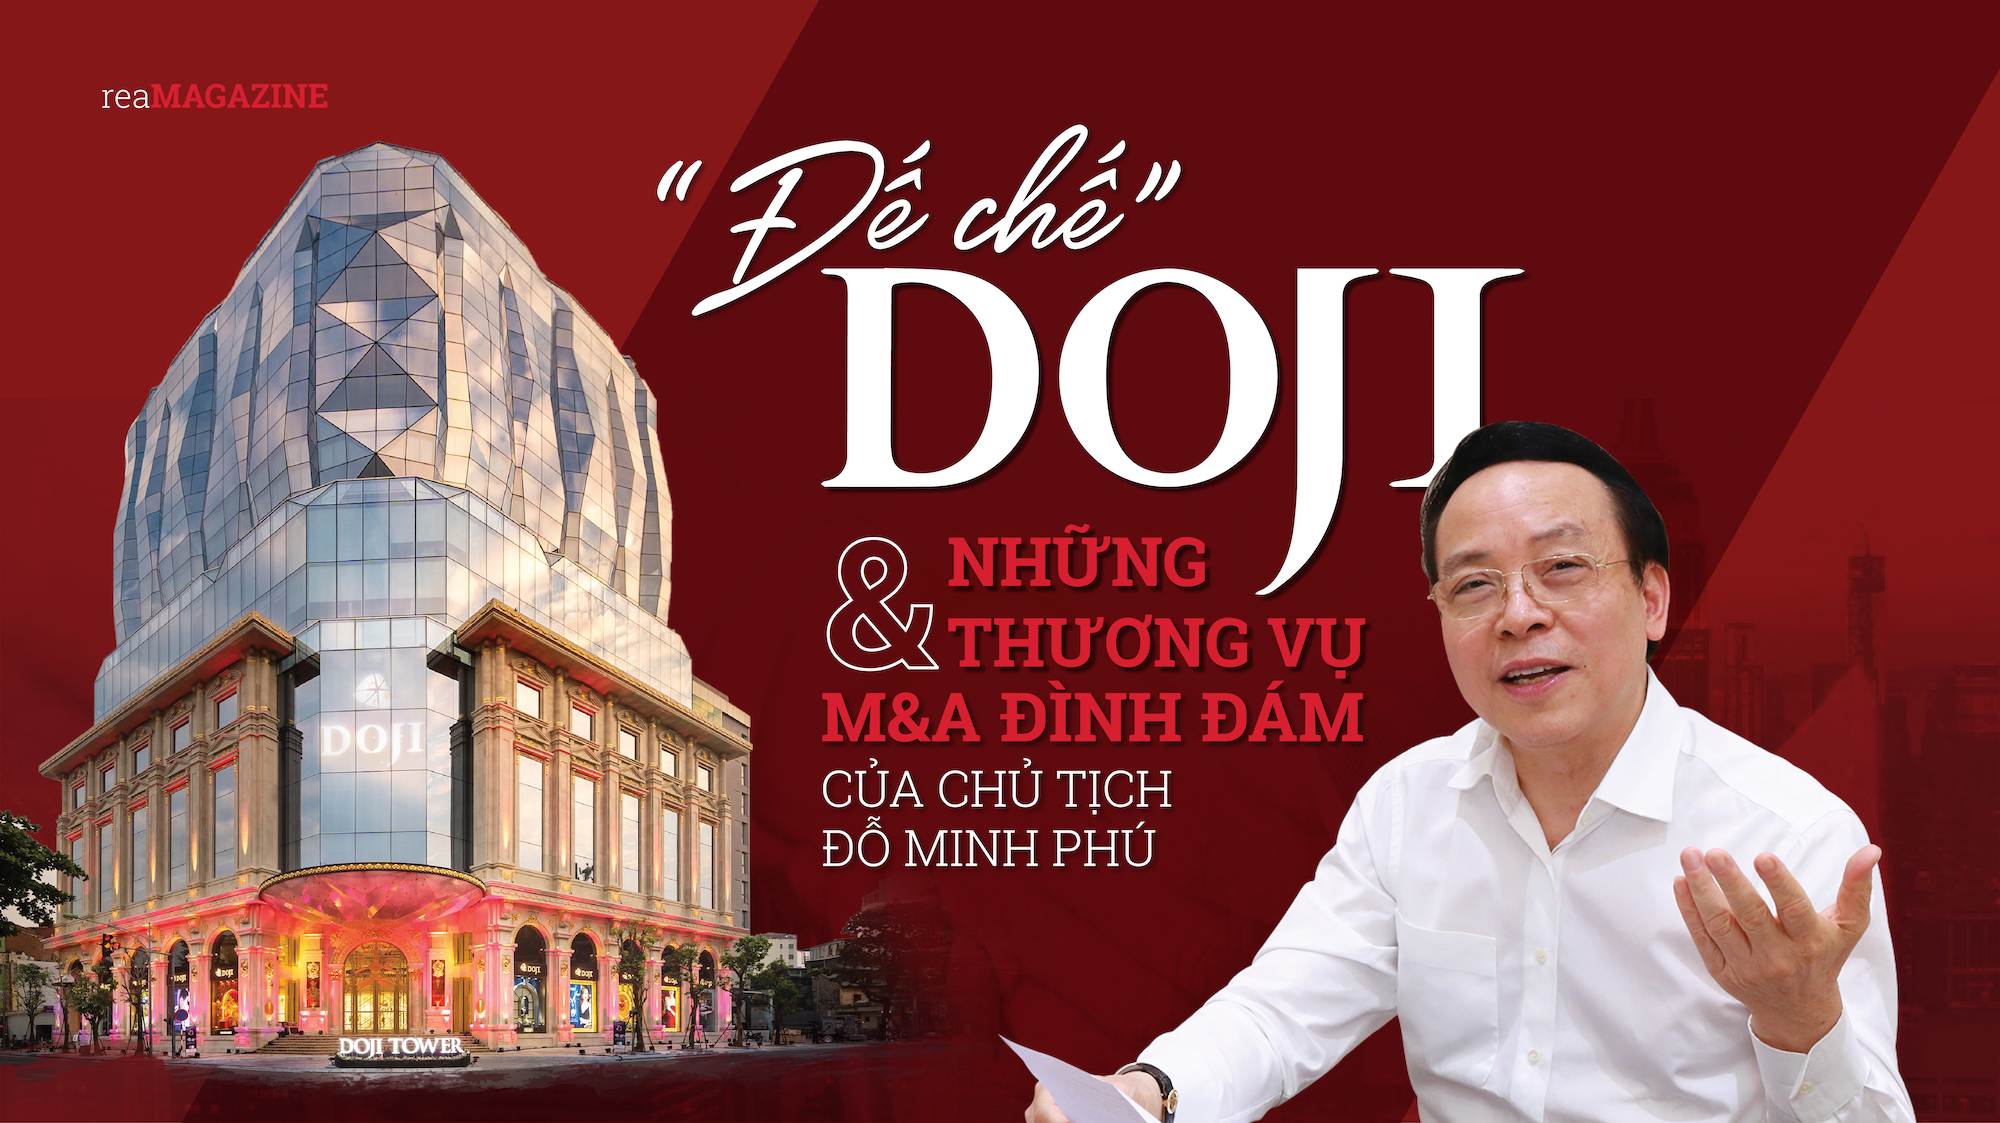 “Đế chế” DOJI và những thương vụ M&A đình đám của Chủ tịch Đỗ Minh Phú